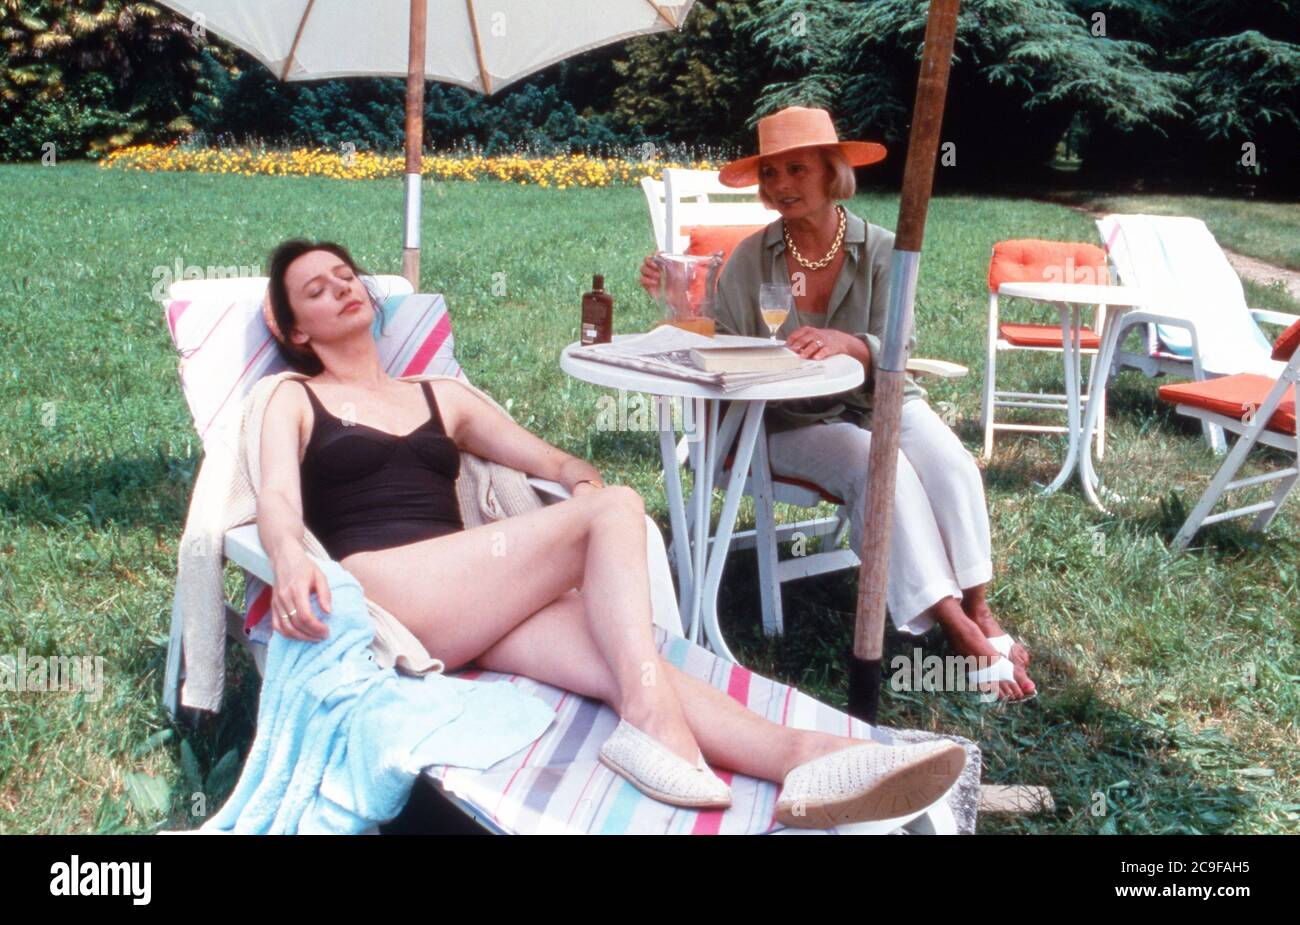 Schloß Hohenstein - Irrwege zum Glück, Fernsehserie, Deutschland 1992 - 1995, Darsteller: Sophie von Kessel, Ruth Maria Kubitschek Stock Photo